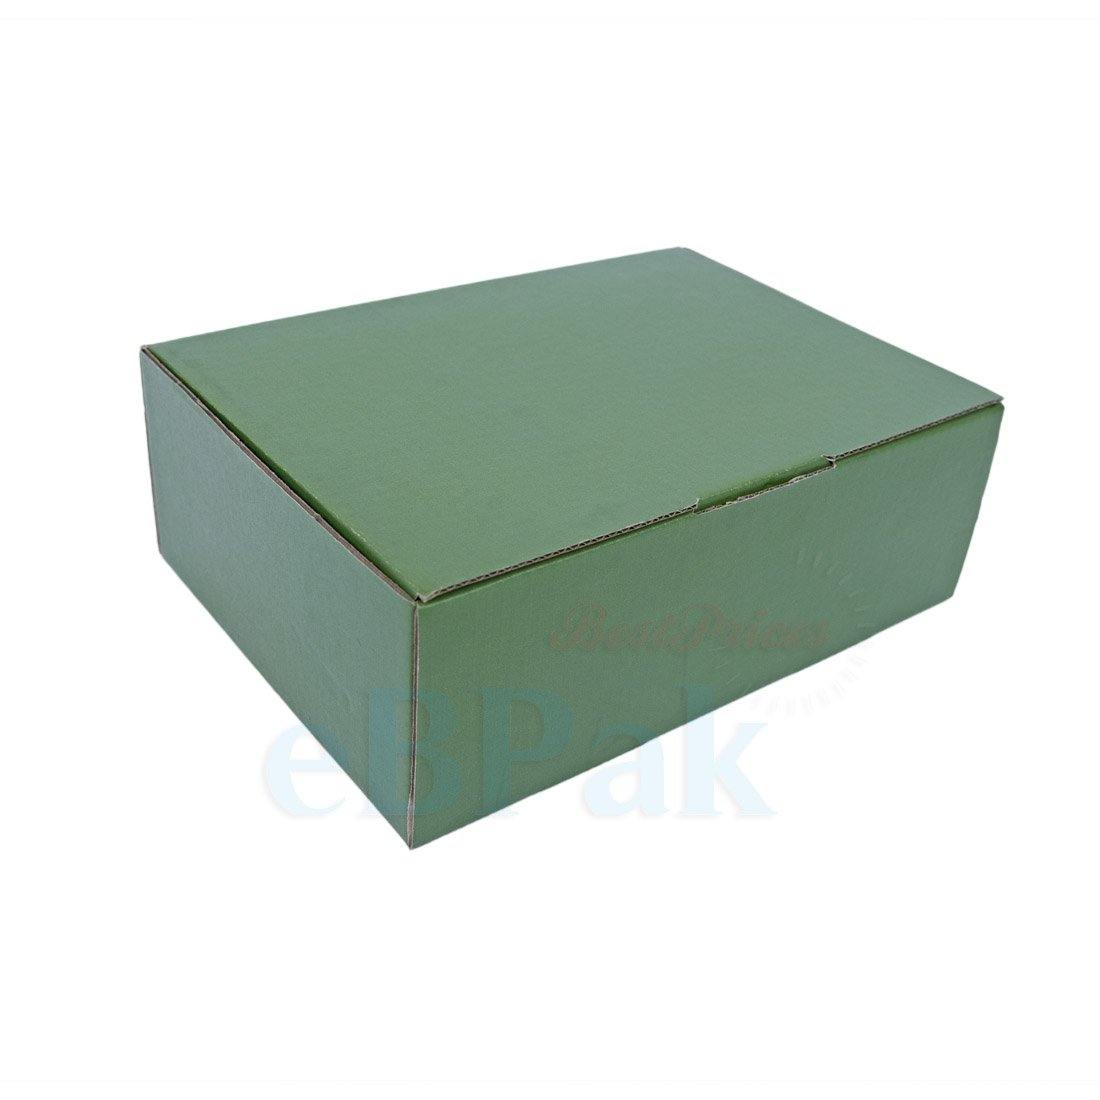 BoxMore Green 310 x 230 x 105mm A4 Diecut Mailing Box B60